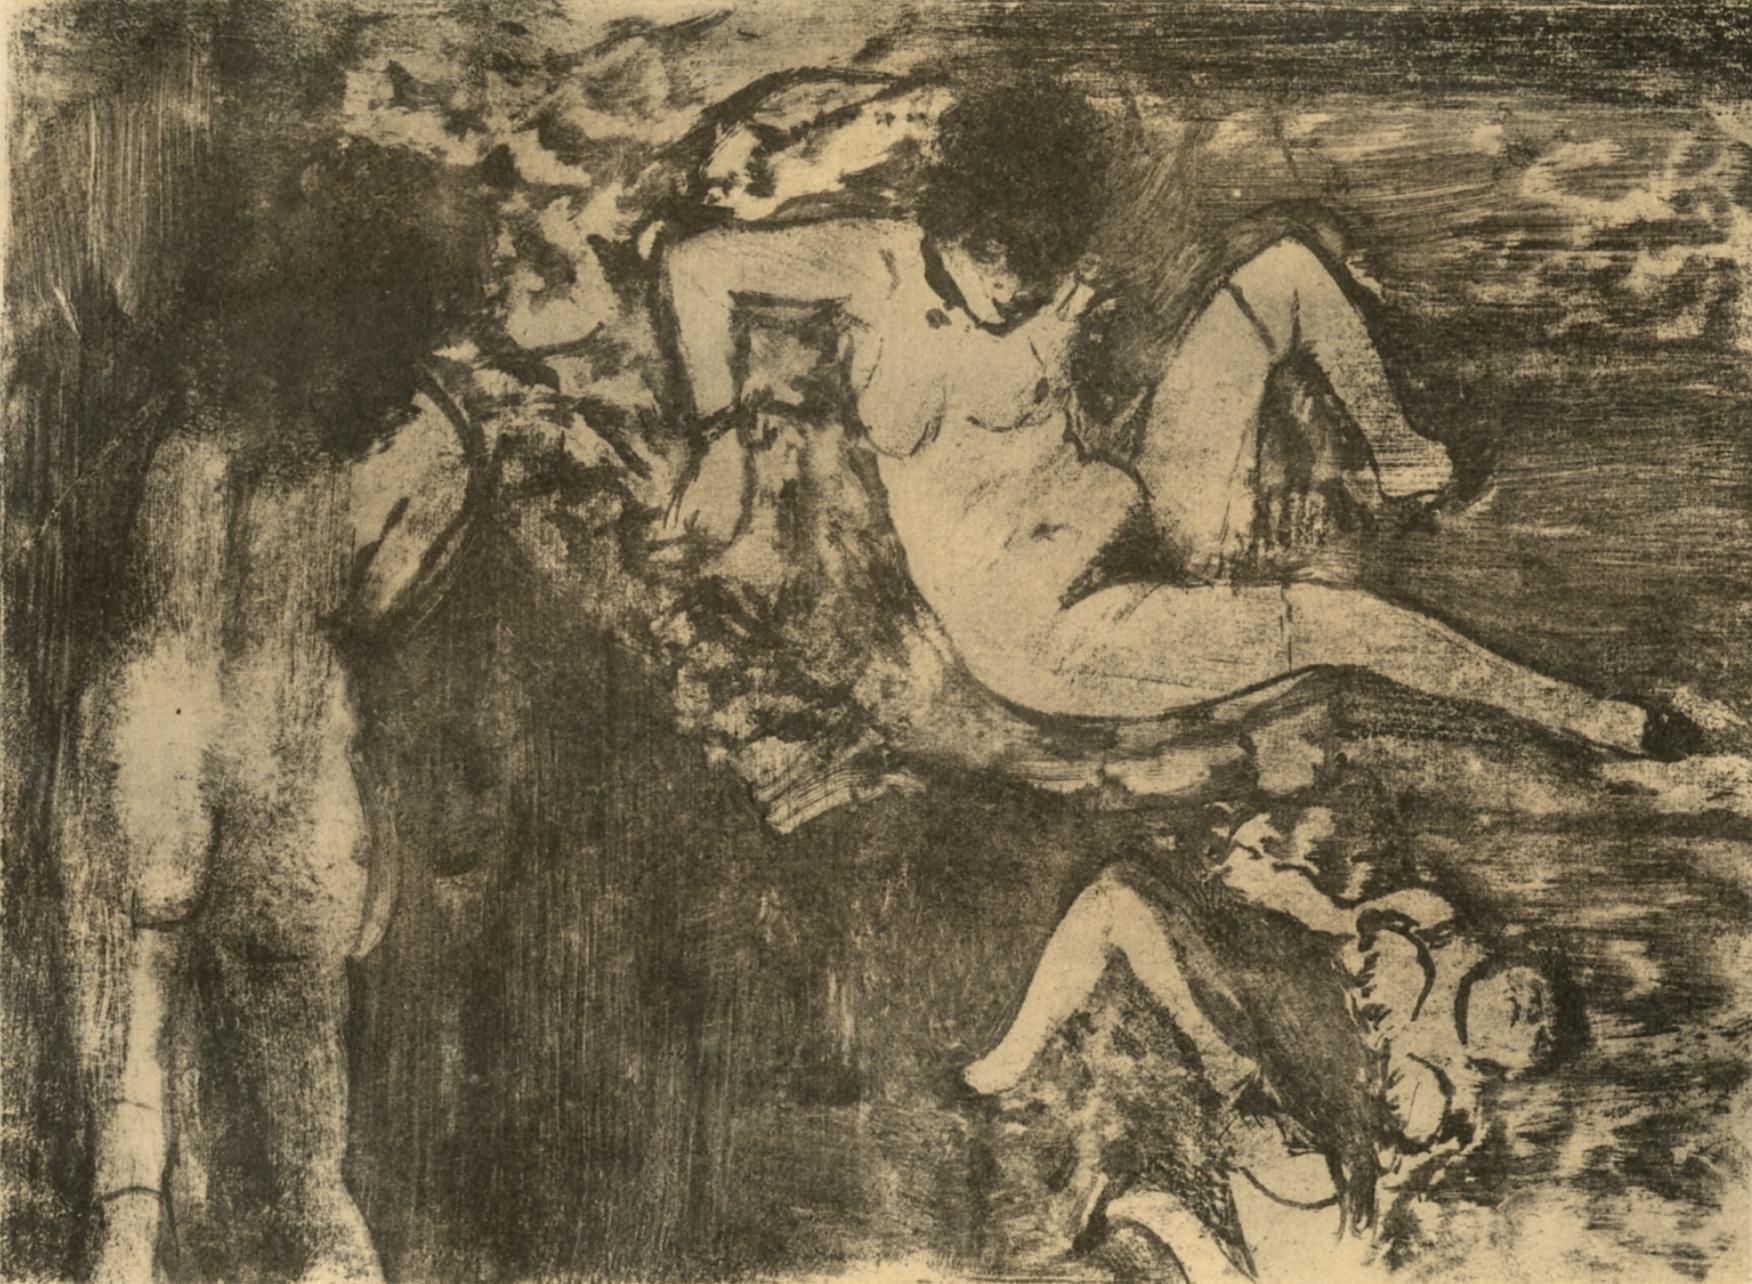 Degas, Les Femmes, Les Monotypes (after)